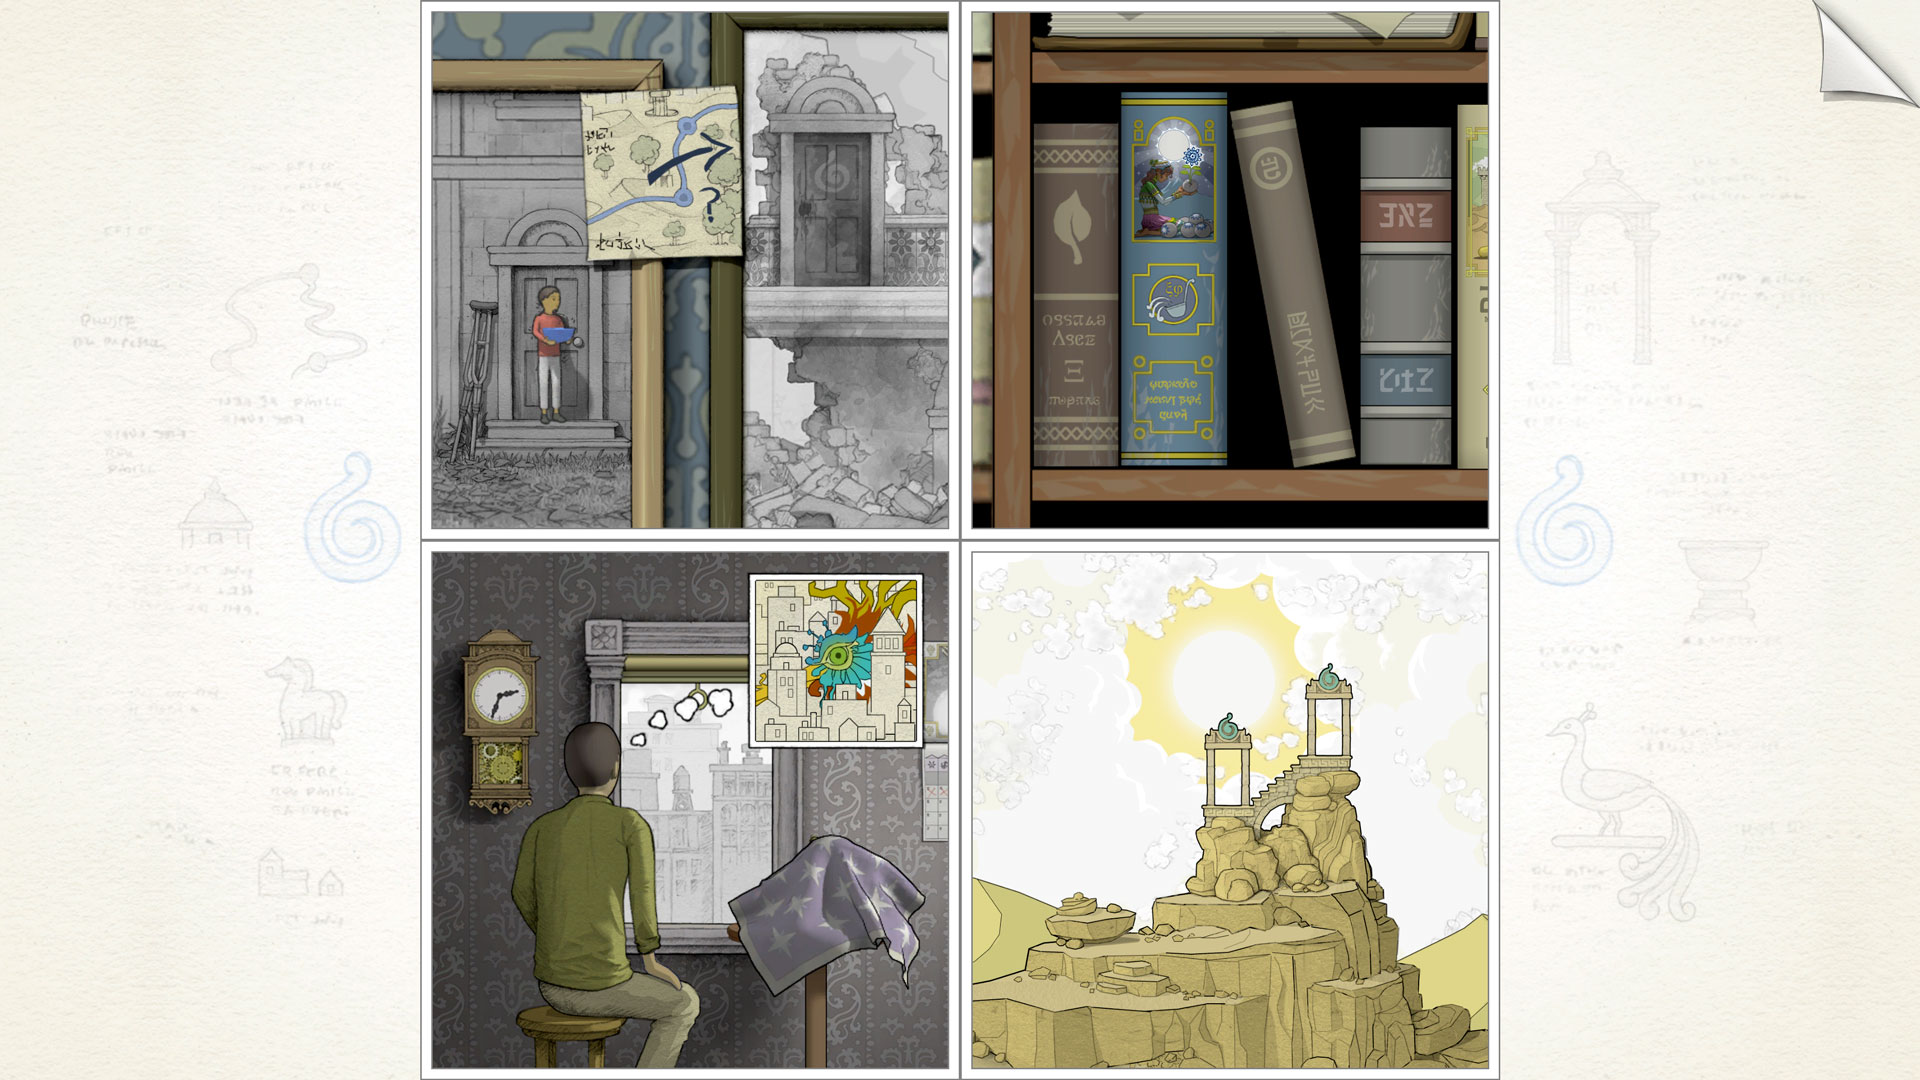 Beste mobile Puzzlespiele: Gorogoa. Das Bild zeigt vier malerische Bilder - eines zeigt ein Bücherregal, man zeigt Bilder an einer Wand, eine zeigt eine Person, die aus dem Fenster schaut, und eine letzte zeigt alte Bögen auf einem Berg